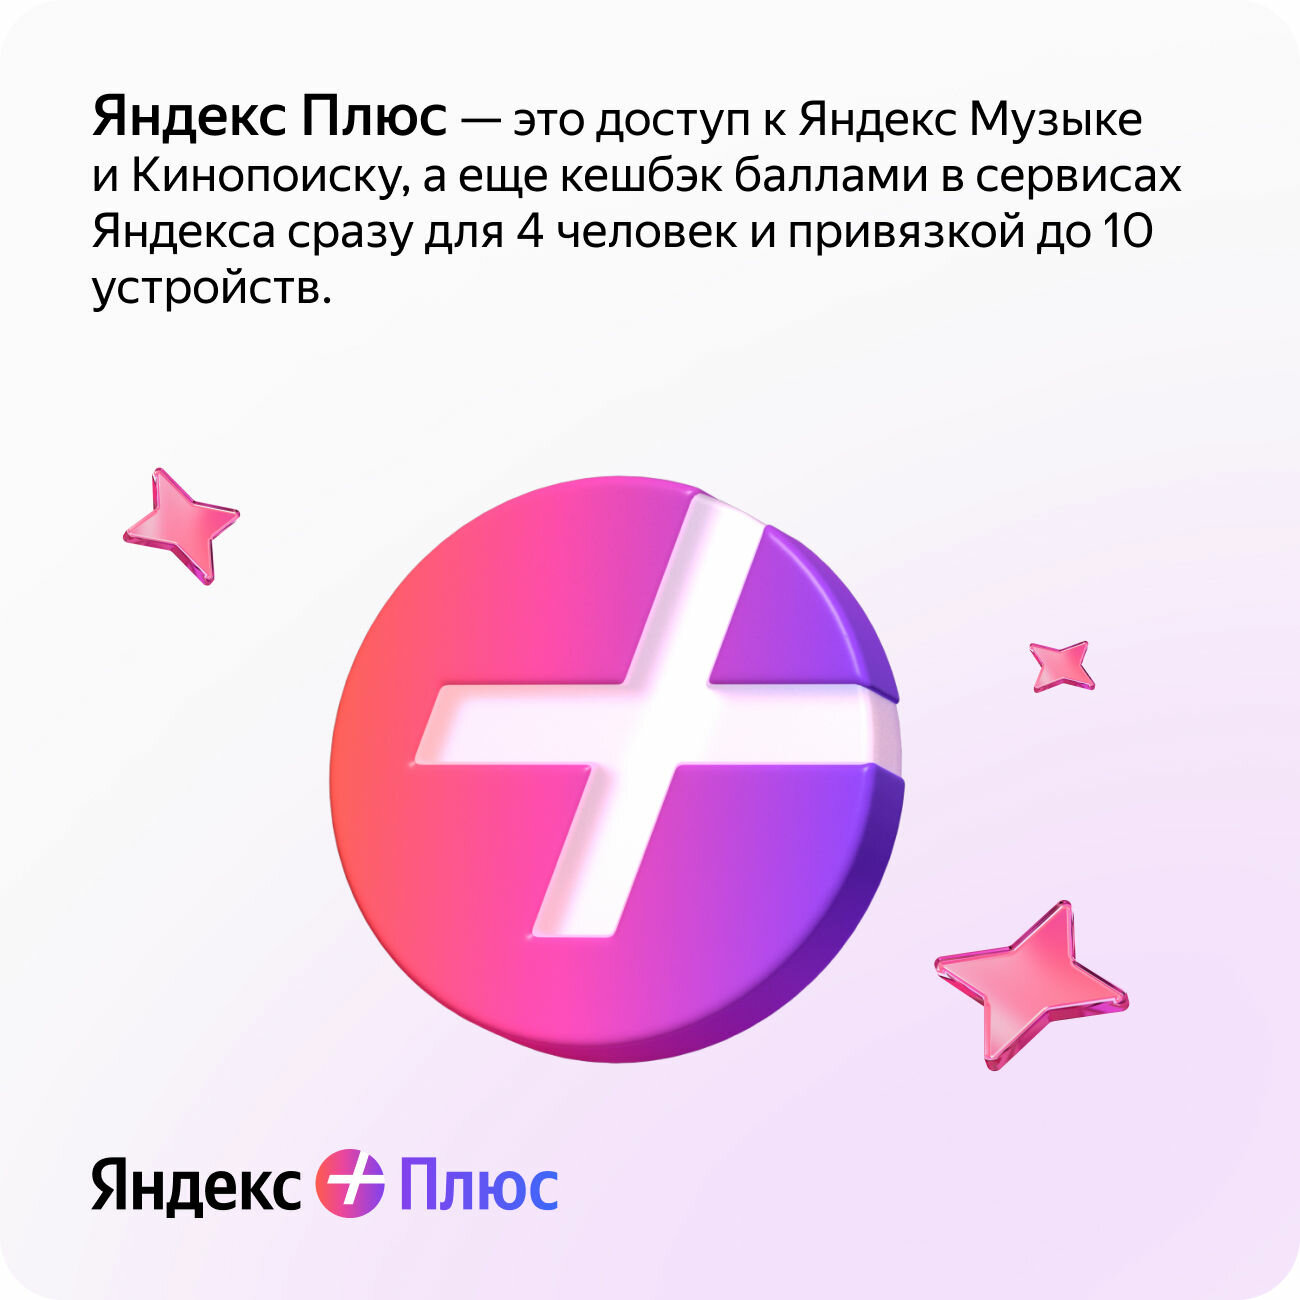 Яндекс Плюс на 12 месяцев + 1236 или 12 месяцев в подарок